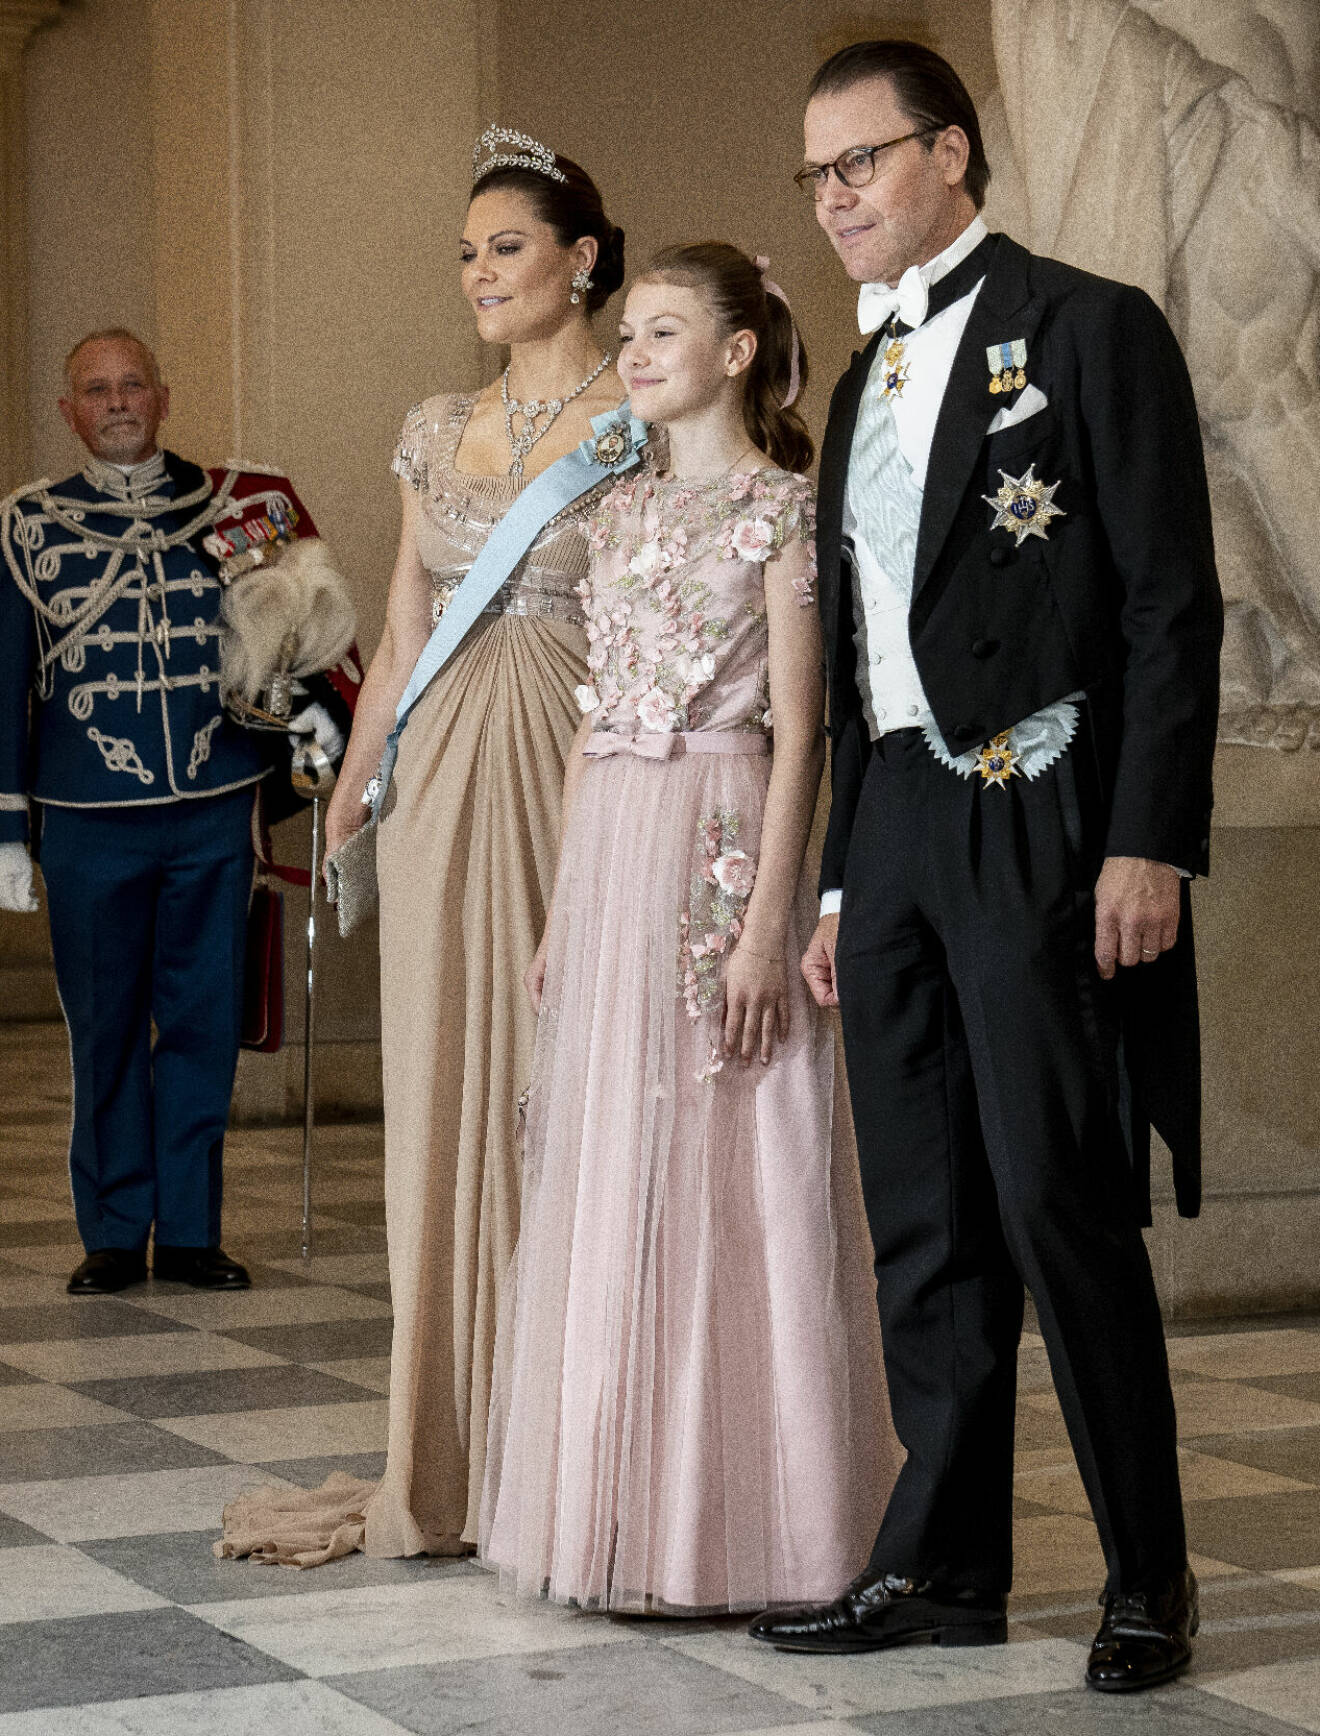 Prins Daniel på galamiddag i Köpenhamn med kronprinsessan Victoria och prinsessan Estelle